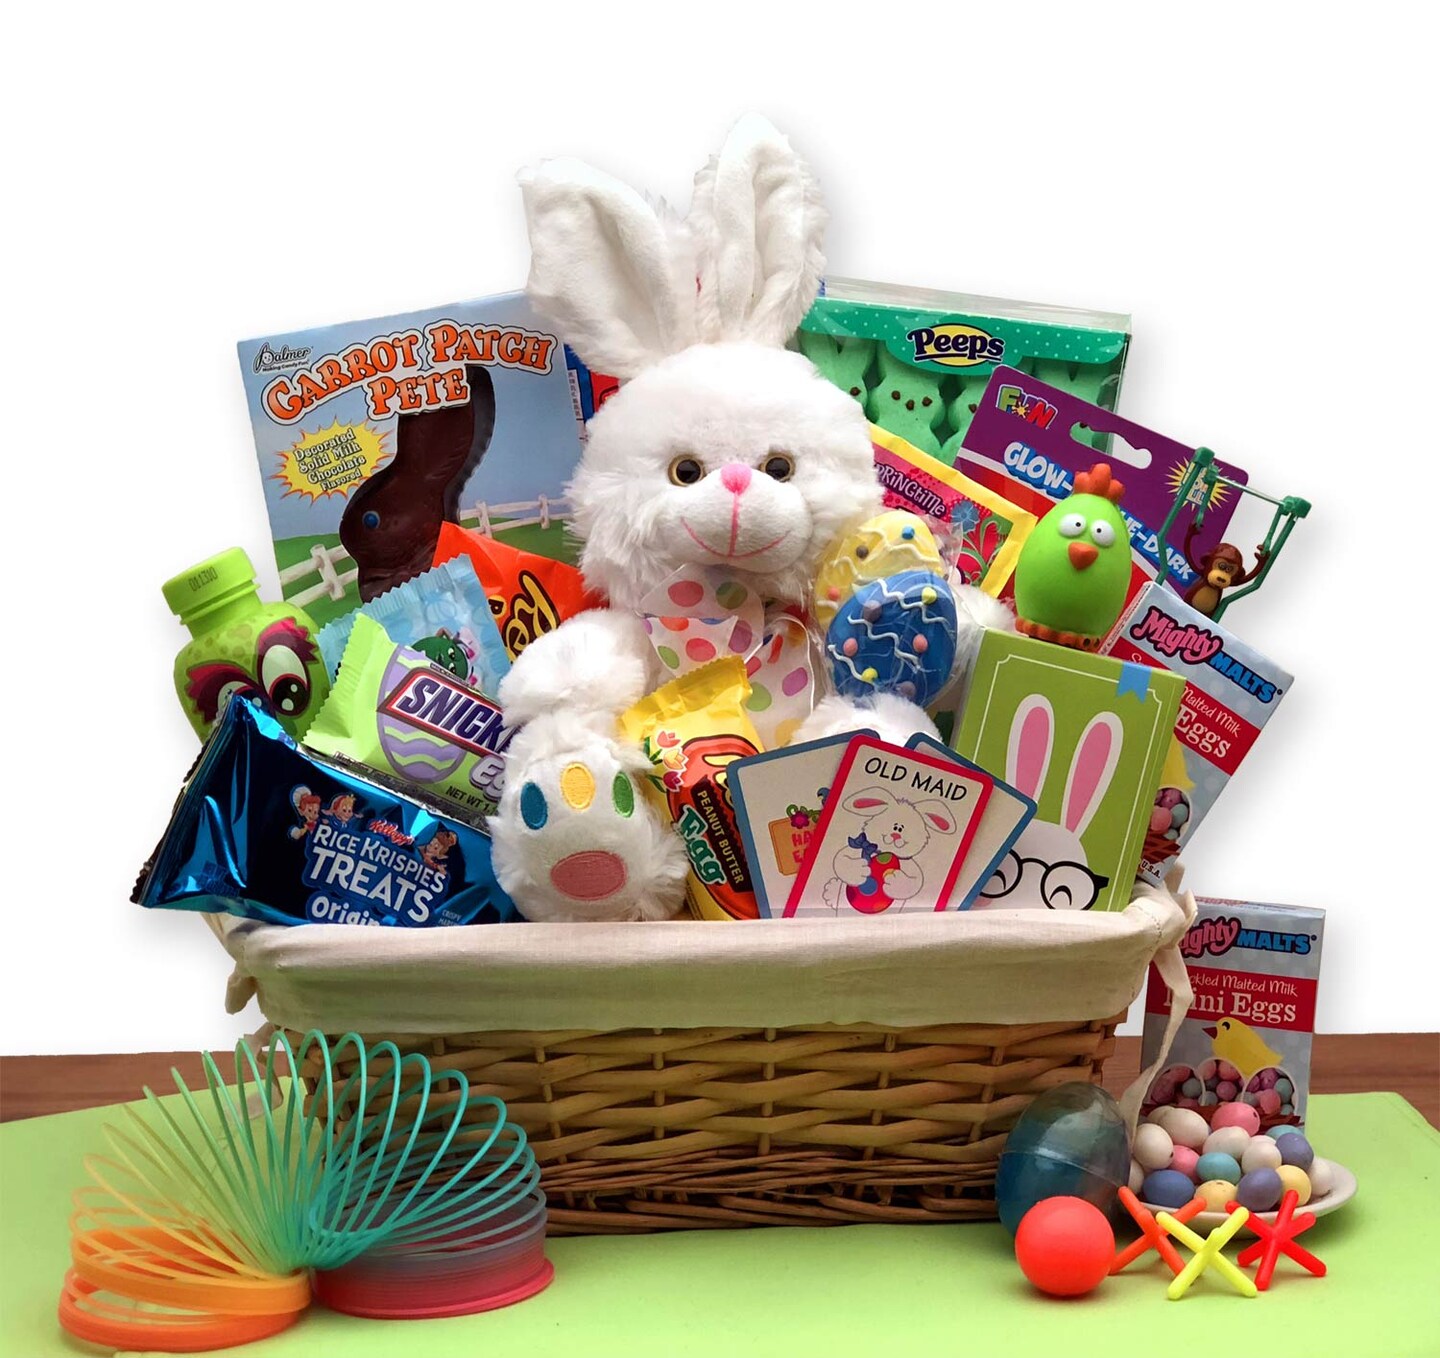 GBDS Easter Gift Basket - Bunny Express Easter Gift Basket